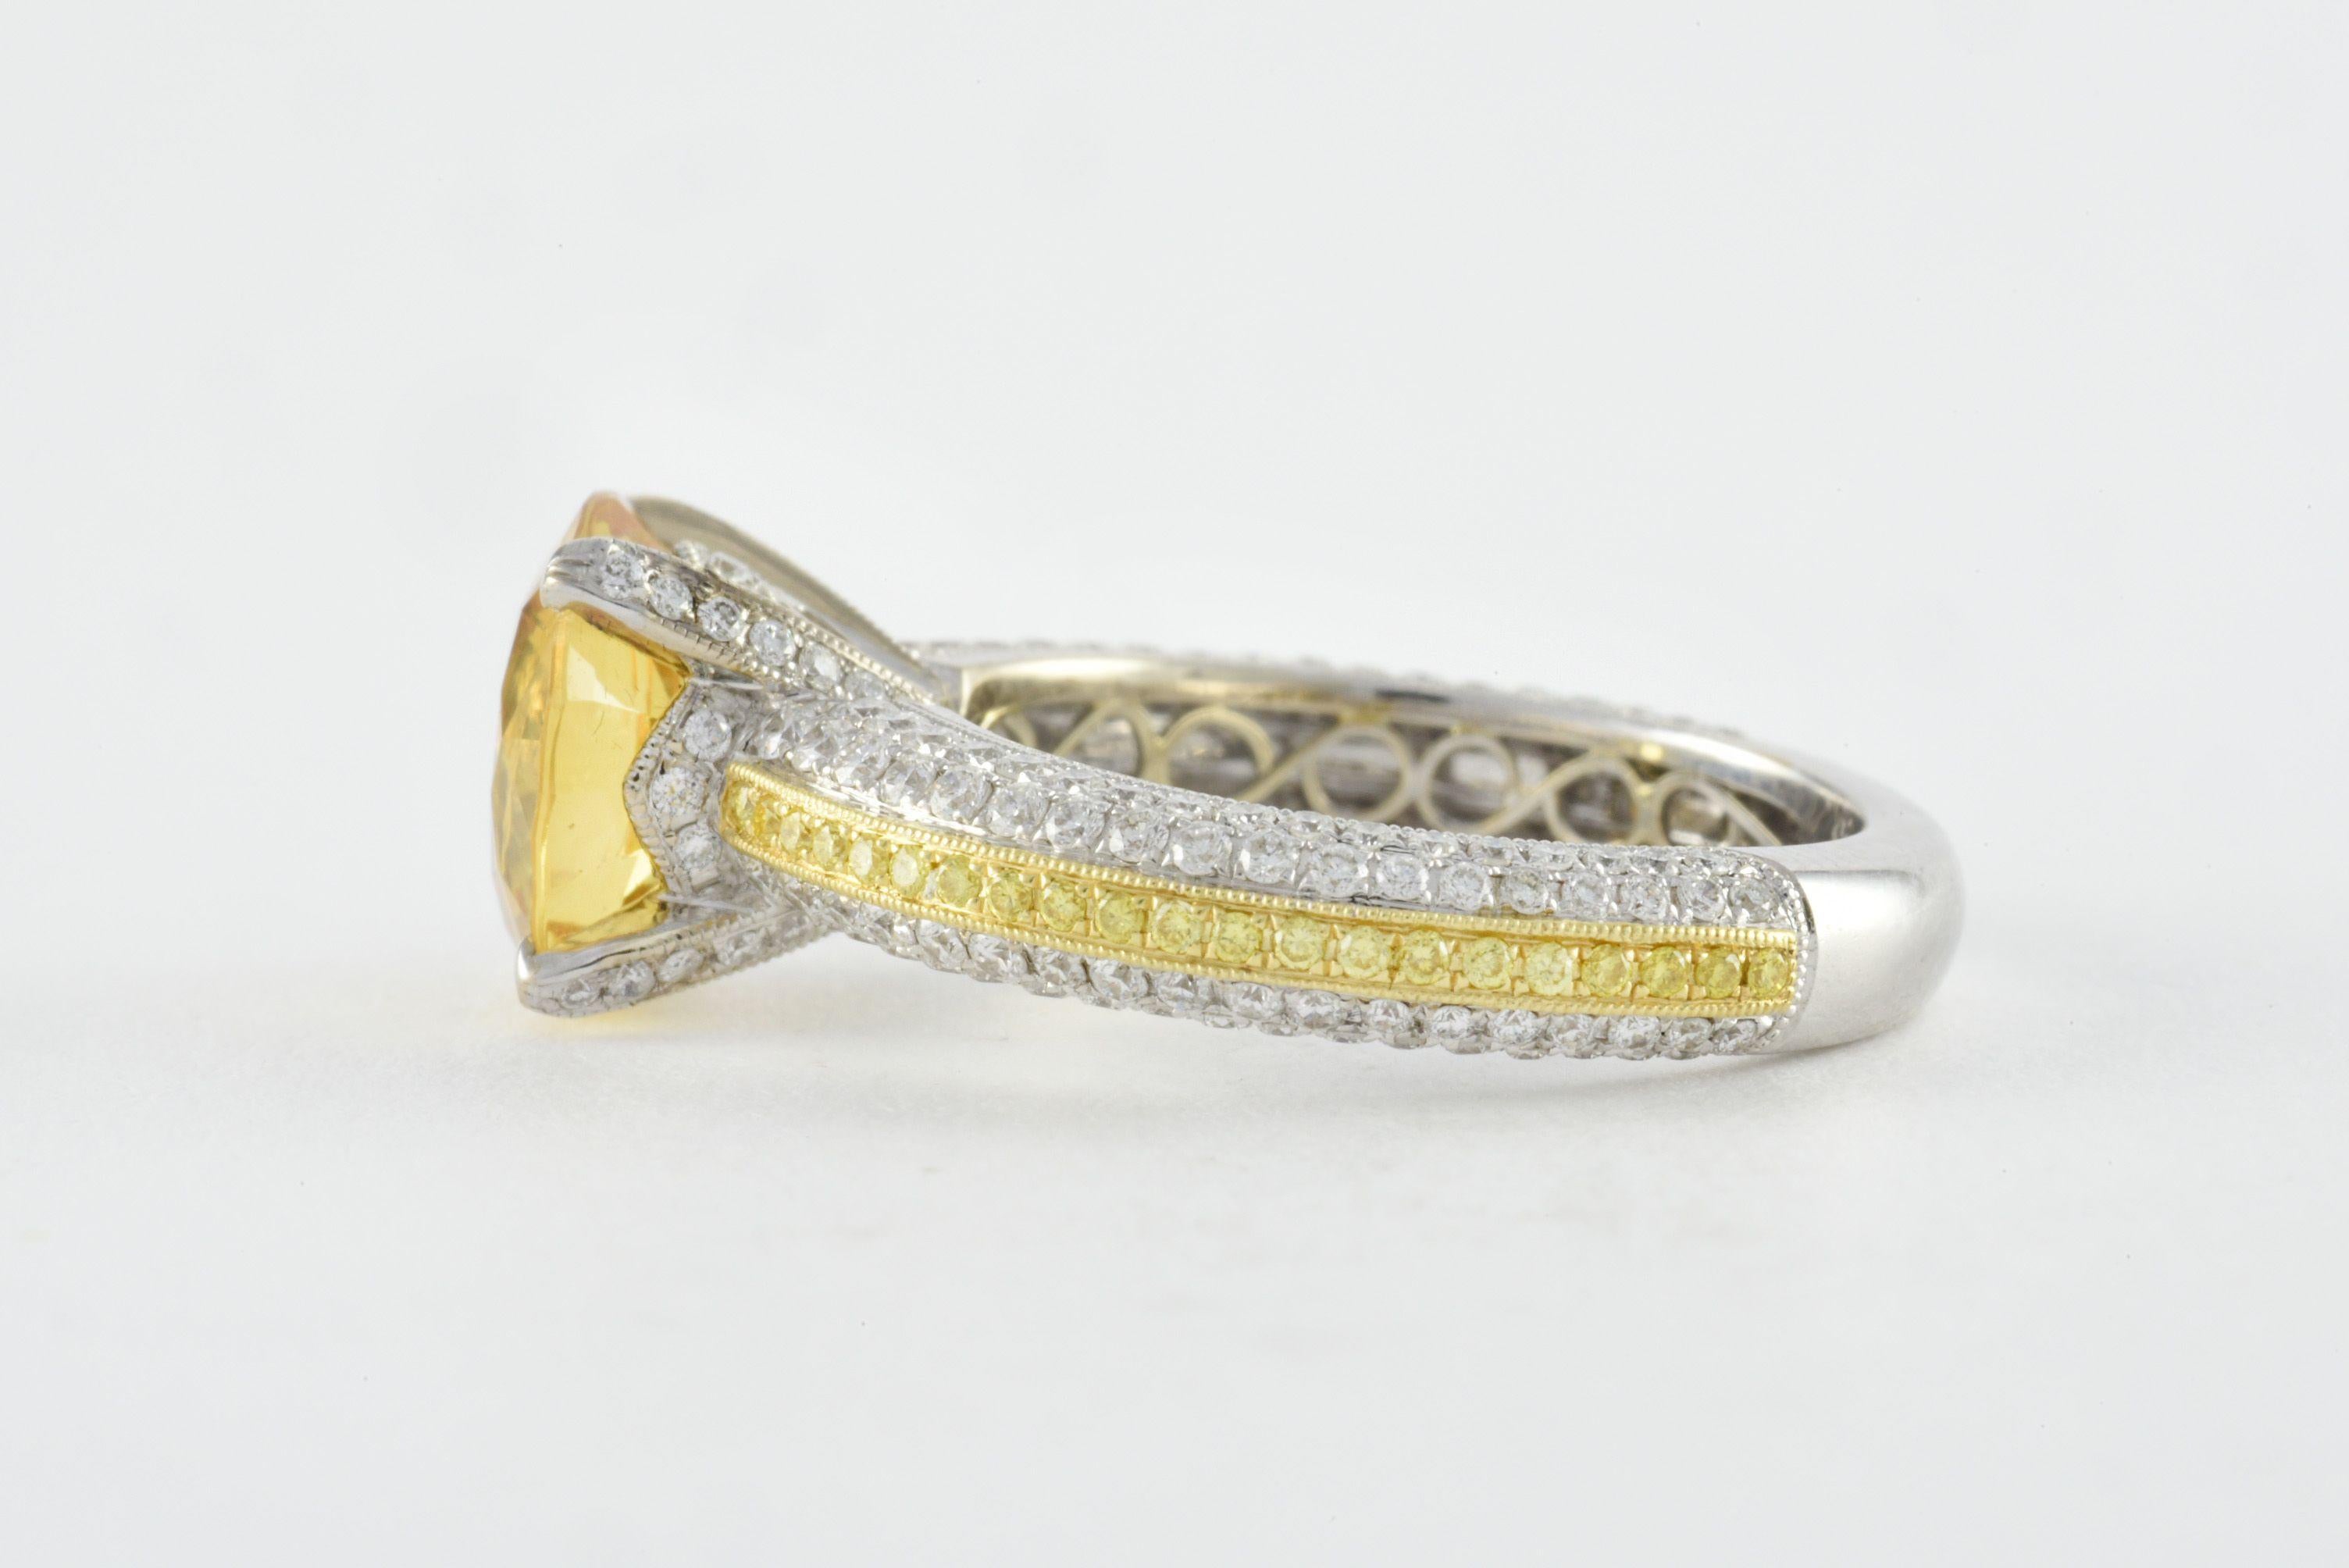 Un saphir jaune naturel non chauffé, de forme ronde, mesurant environ 9,61 mm, se trouve au centre de cette superbe bague du bijoutier Simon G. et est agrémenté d'un mélange de diamants blancs ronds totalisant 0,88 carats et de diamants jaunes